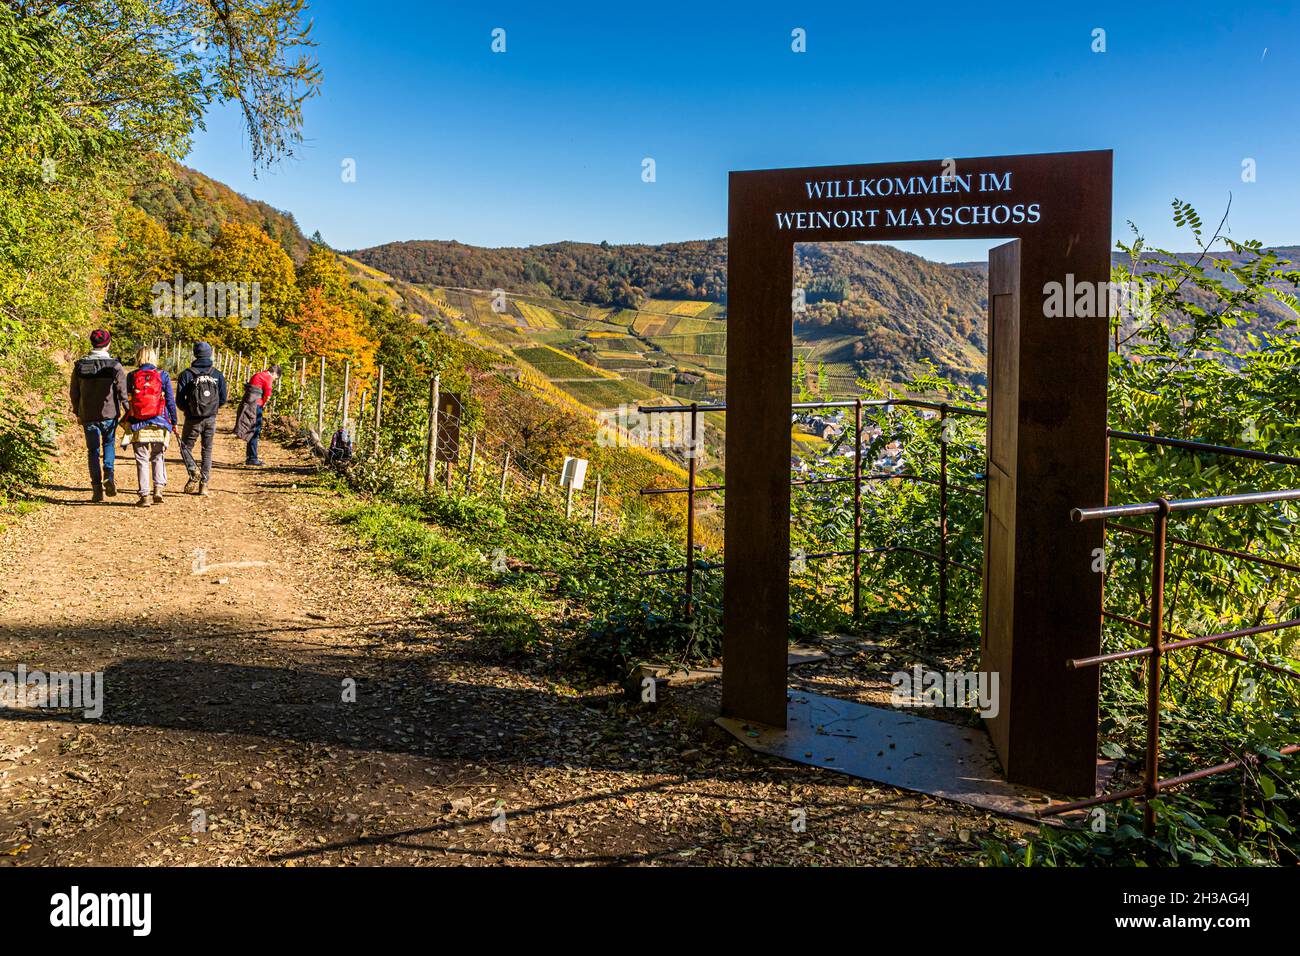 La regione vinicola vicino a Mayschoß, in Germania, vi invita a fare escursioni in autunno Foto Stock